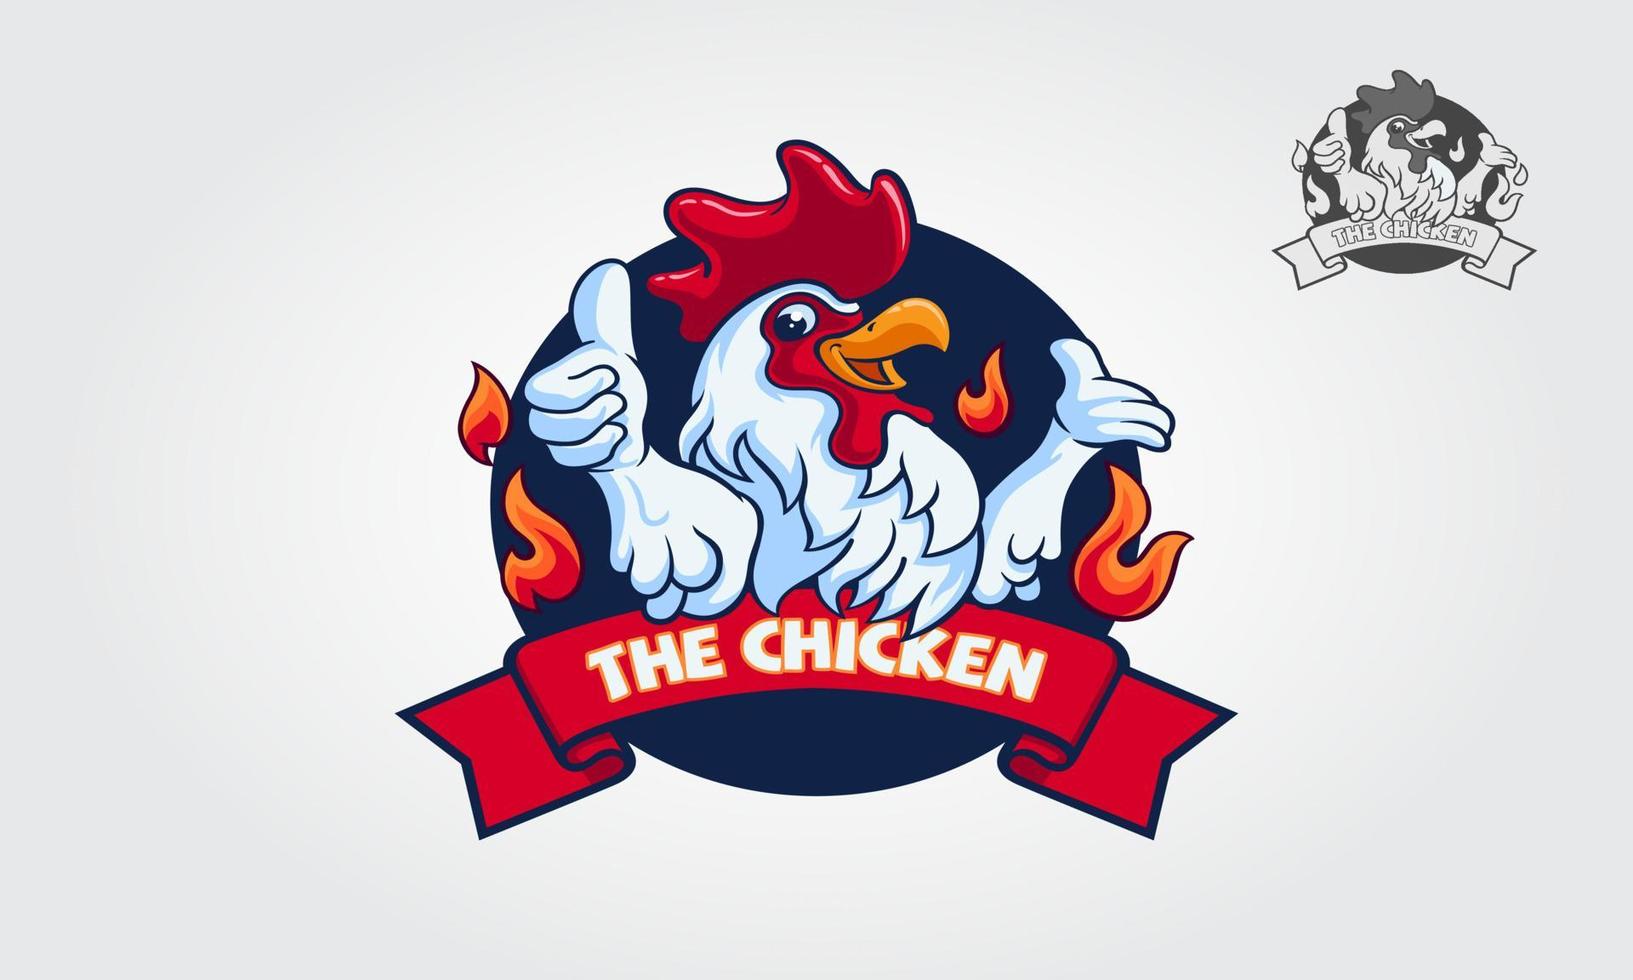 die hühnerlogoillustration. Diese Logovorlage eignet sich für Unternehmen, Produktnamen, Restaurants, die Hähnchengerichte servieren, oder kann auch für moderne Hühnerzuchtbetriebe verwendet werden. vektor